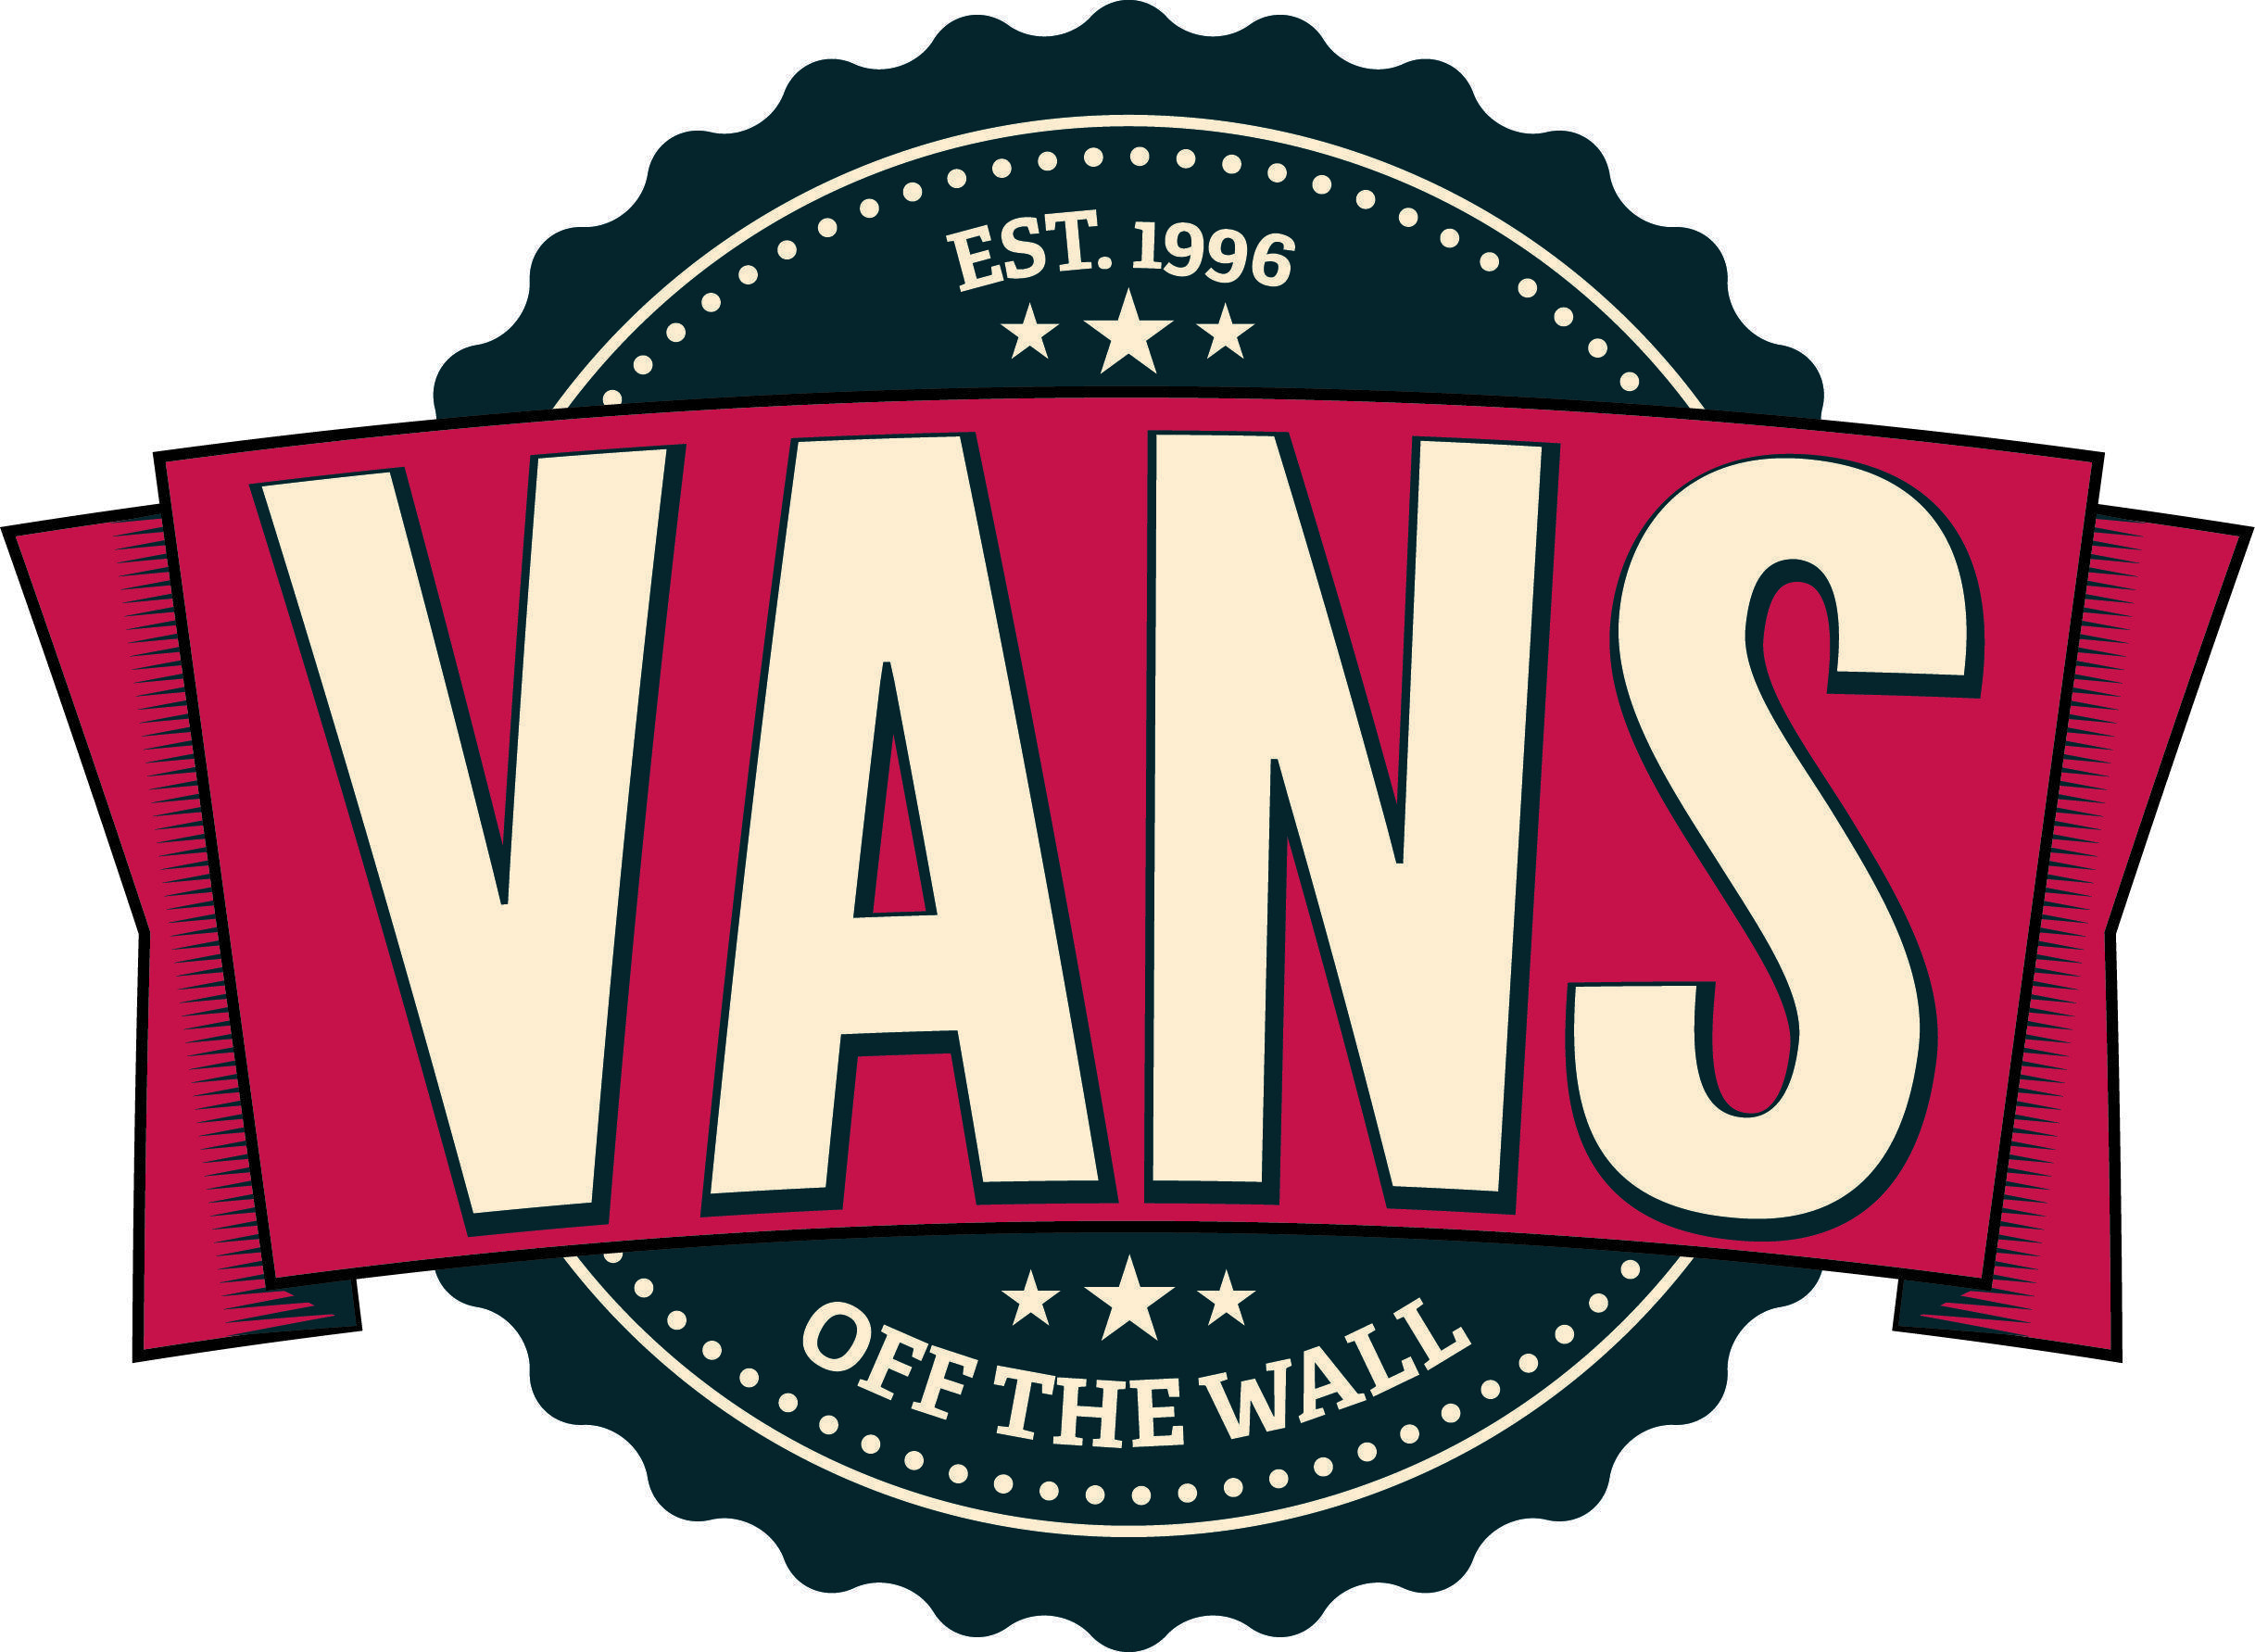 Off the Wall Logo - La Historia de Vans. Ooo. Vans, Vans logo, Vans off the wall